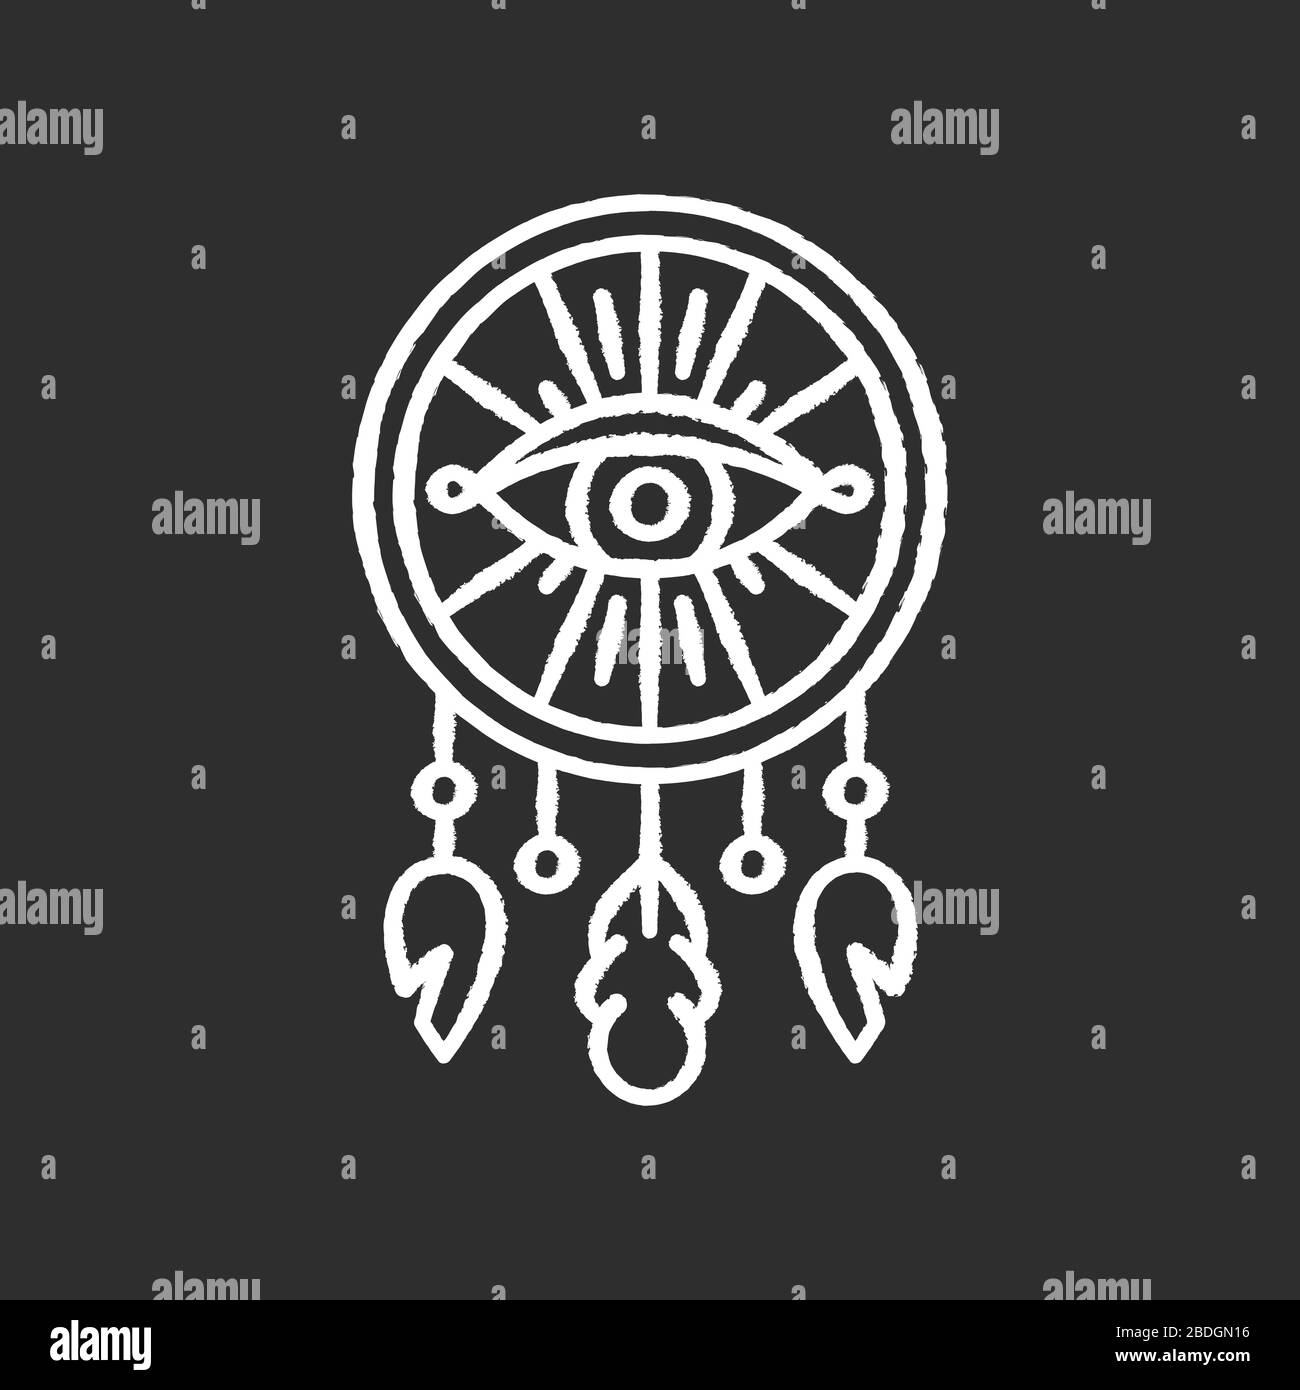 Traumfänger im Boho-Stil mit aufsehendem Kreideweiß-Symbol auf schwarzem Hintergrund. Natives amerikanisches mystisches Symbol. Traumfängercharme. Ethnische Handarbeit Stock Vektor